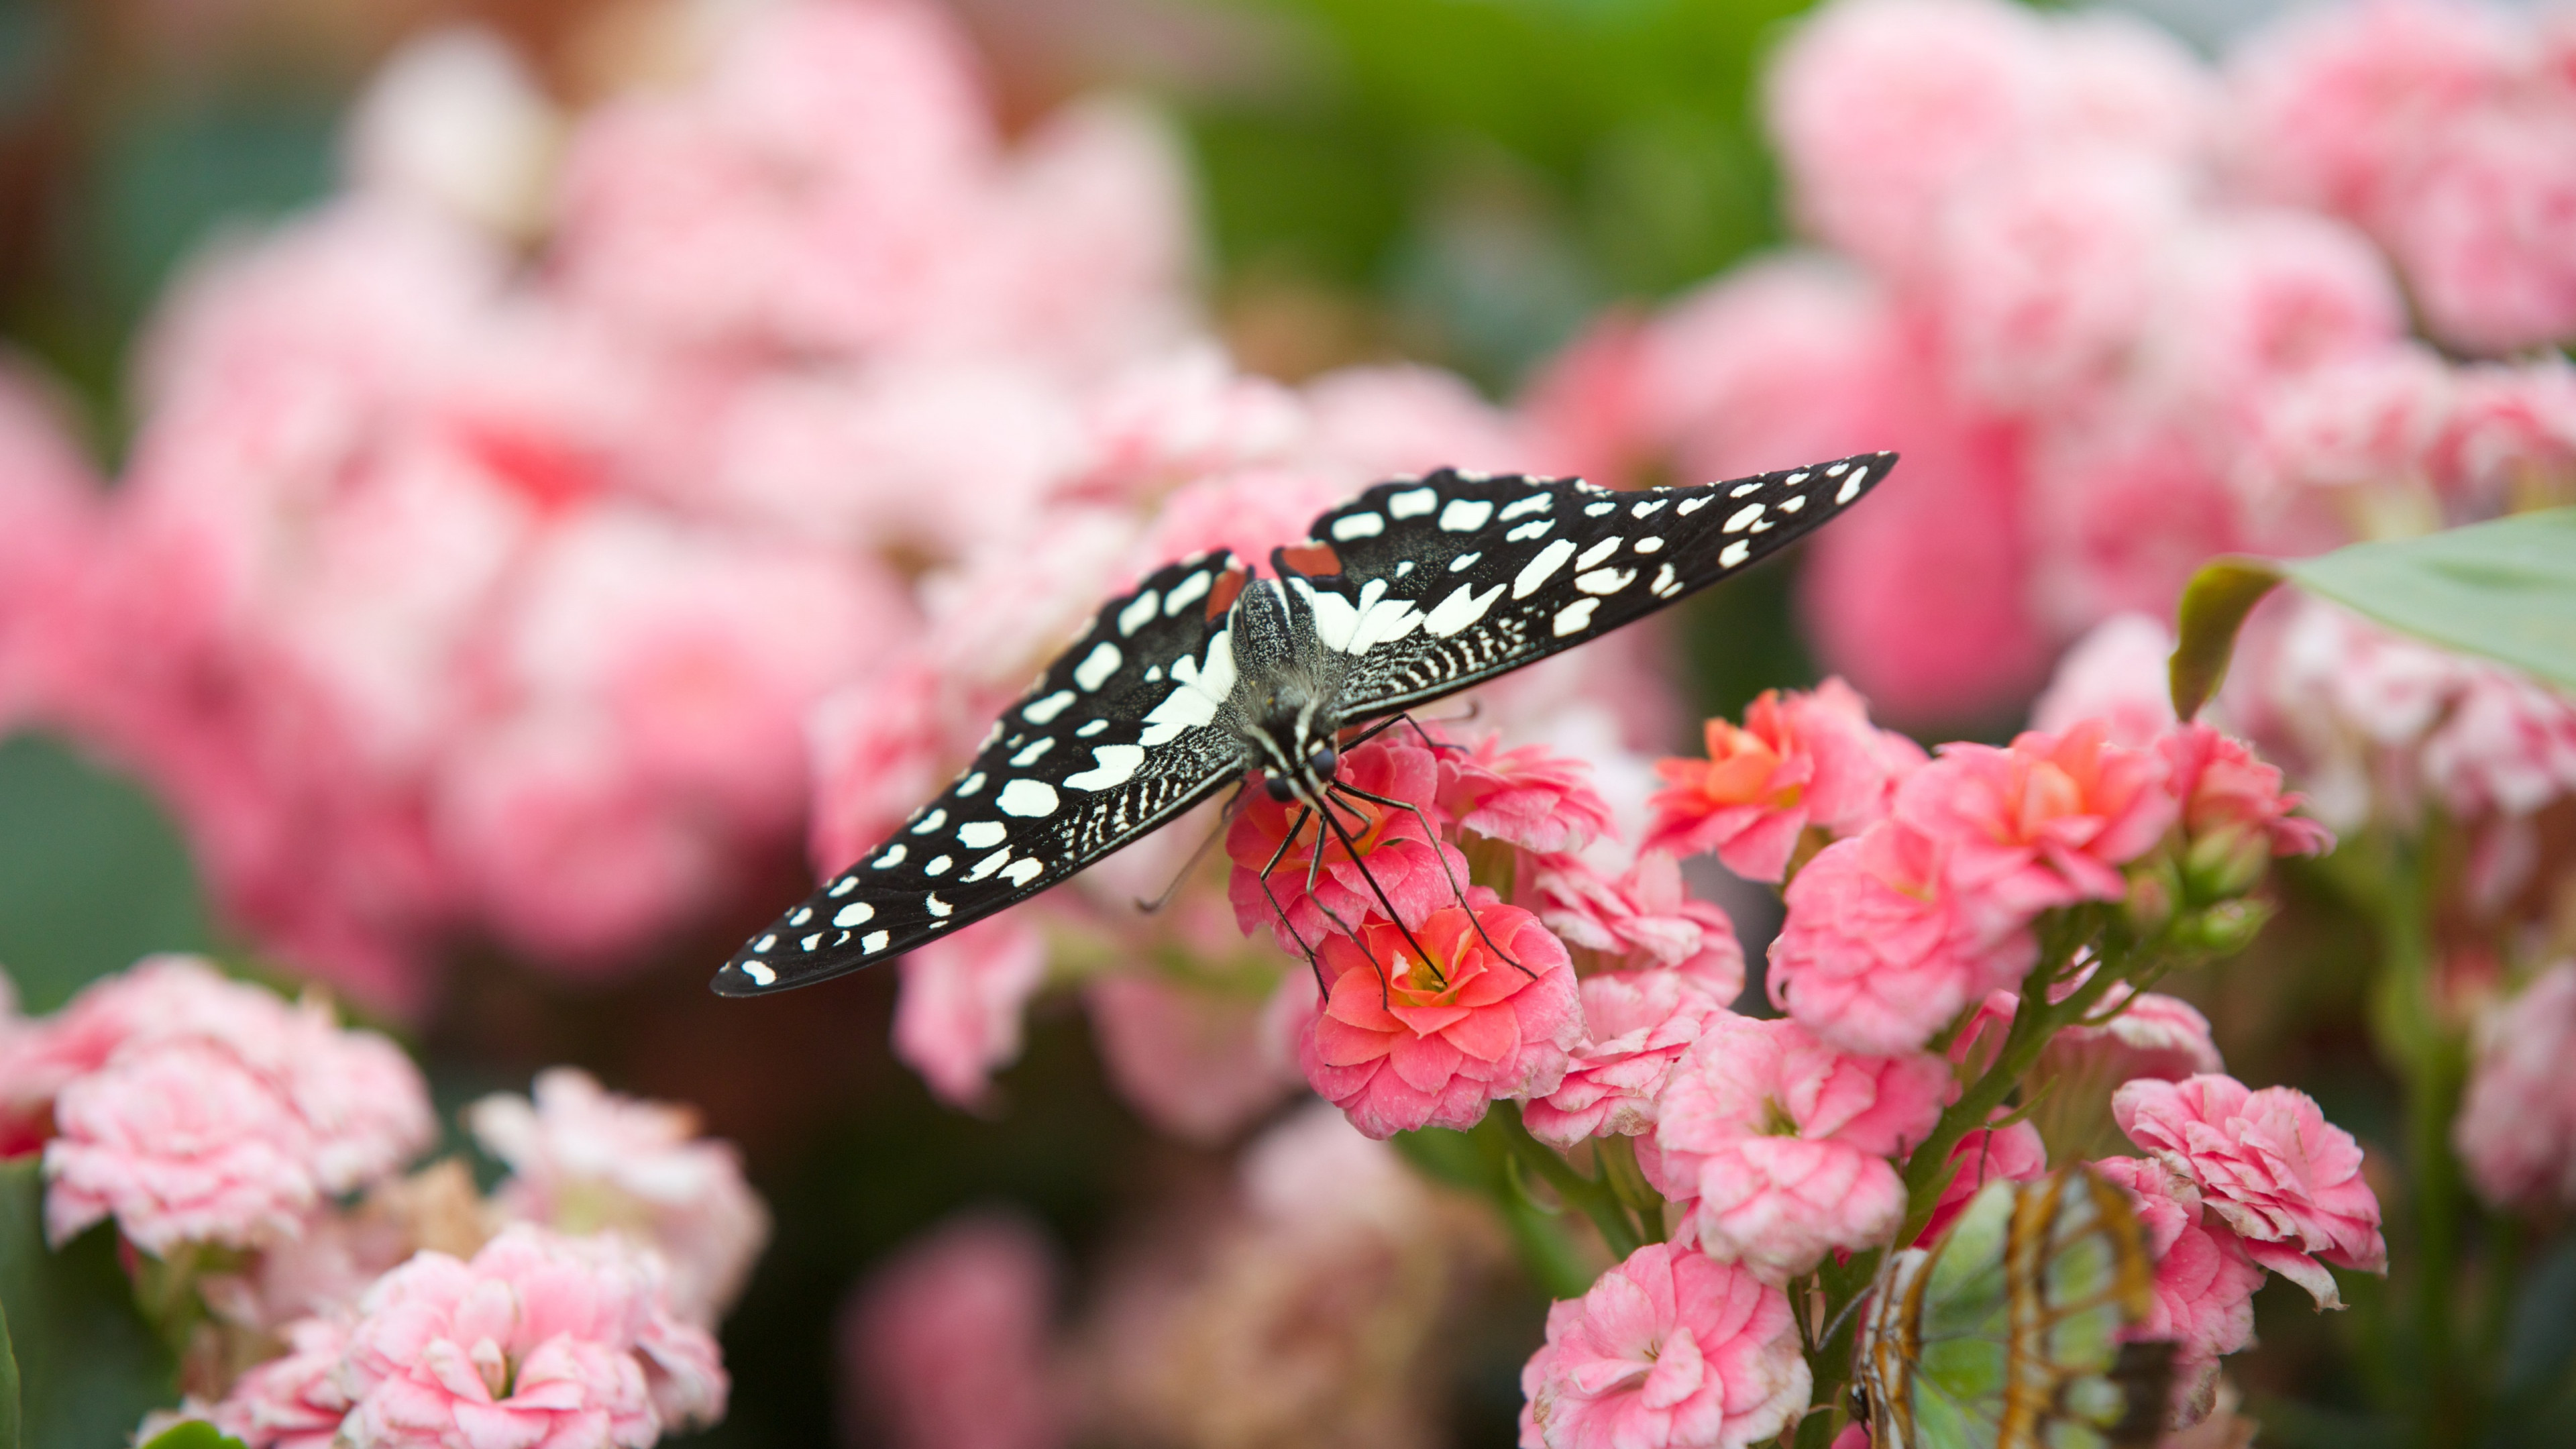 Black butterfly on pink flowers wallpaper 3840x2160